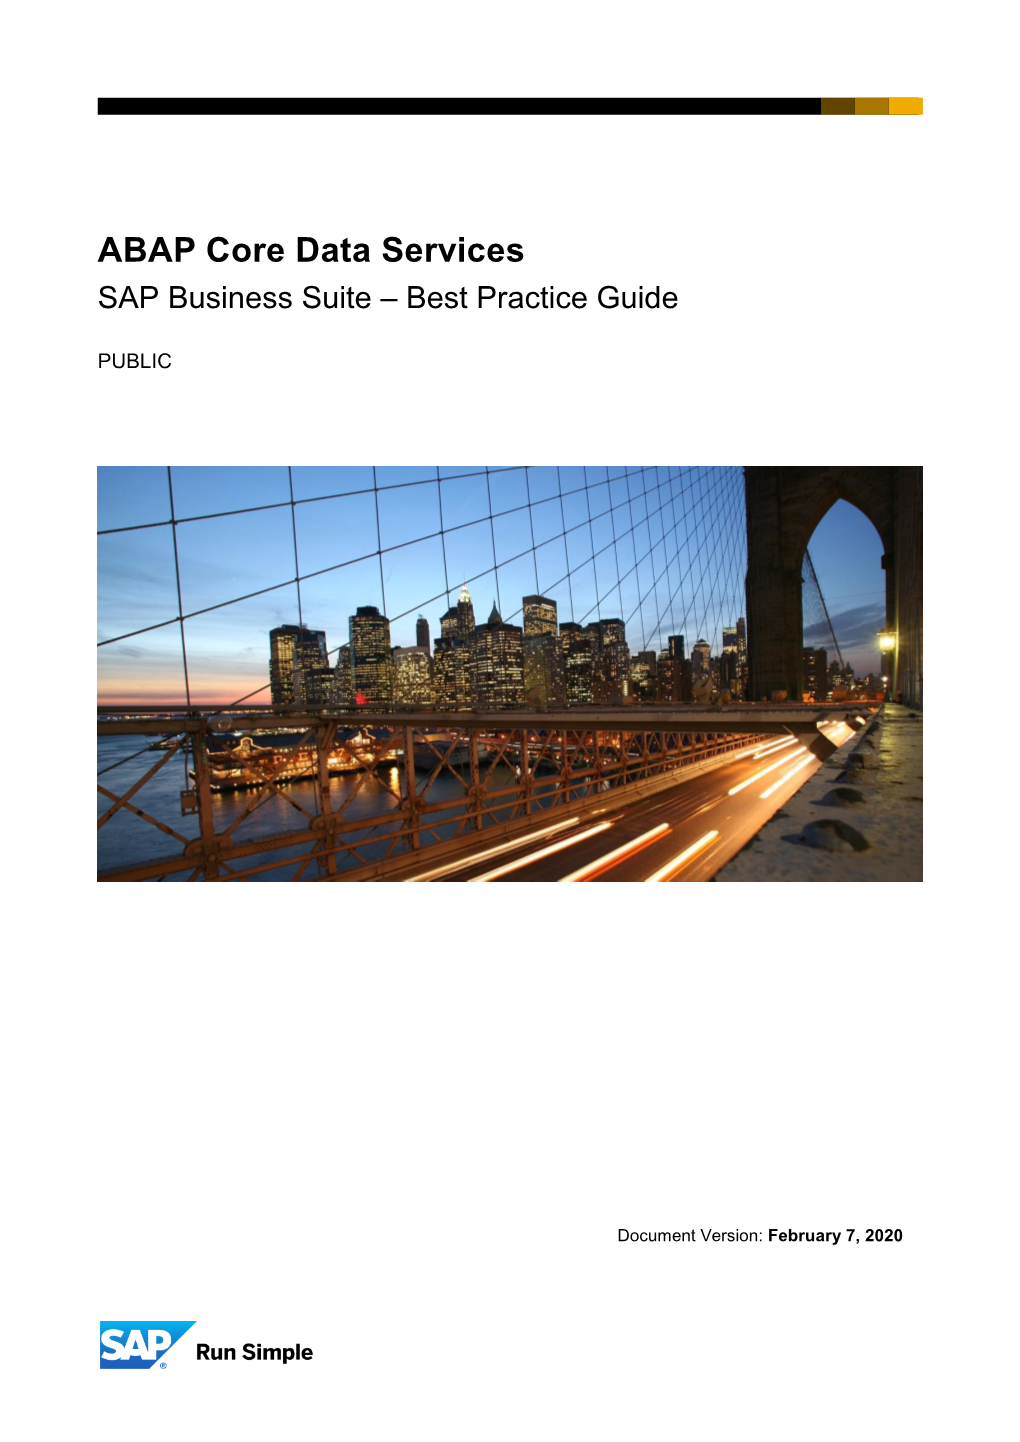 ABAP Core Data Services SAP Business Suite – Best Practice Guide